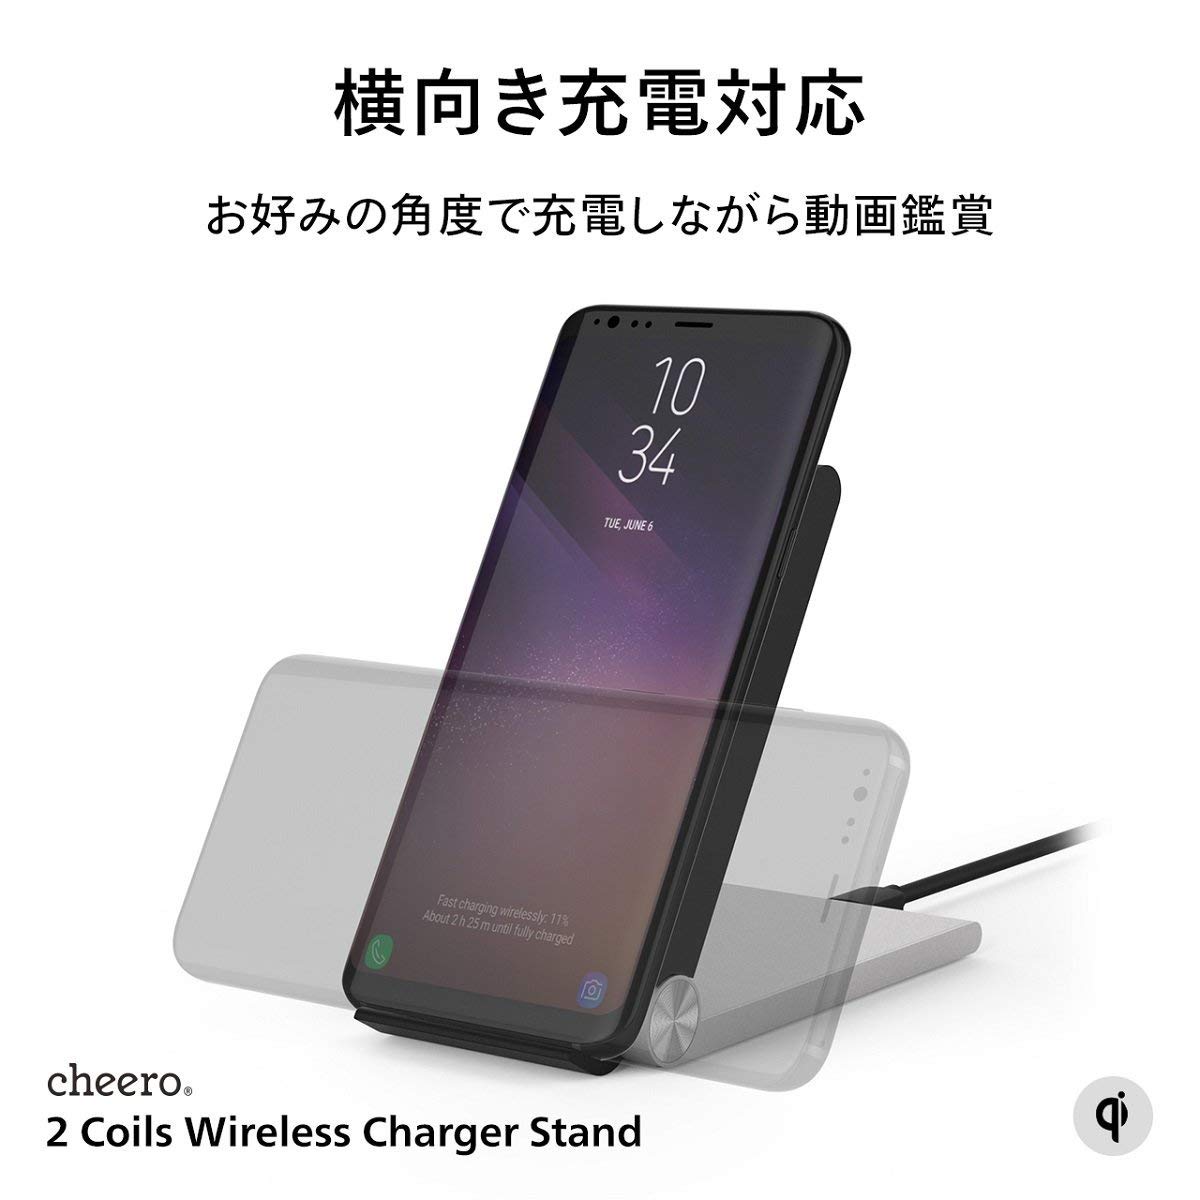 メール便無料】 折り畳み式 ワイヤレス充電スタンド cheero 2 Coils Wireless Charger Stand 置くだけ簡単充電  ワイヤレス充電器 iPhone SE